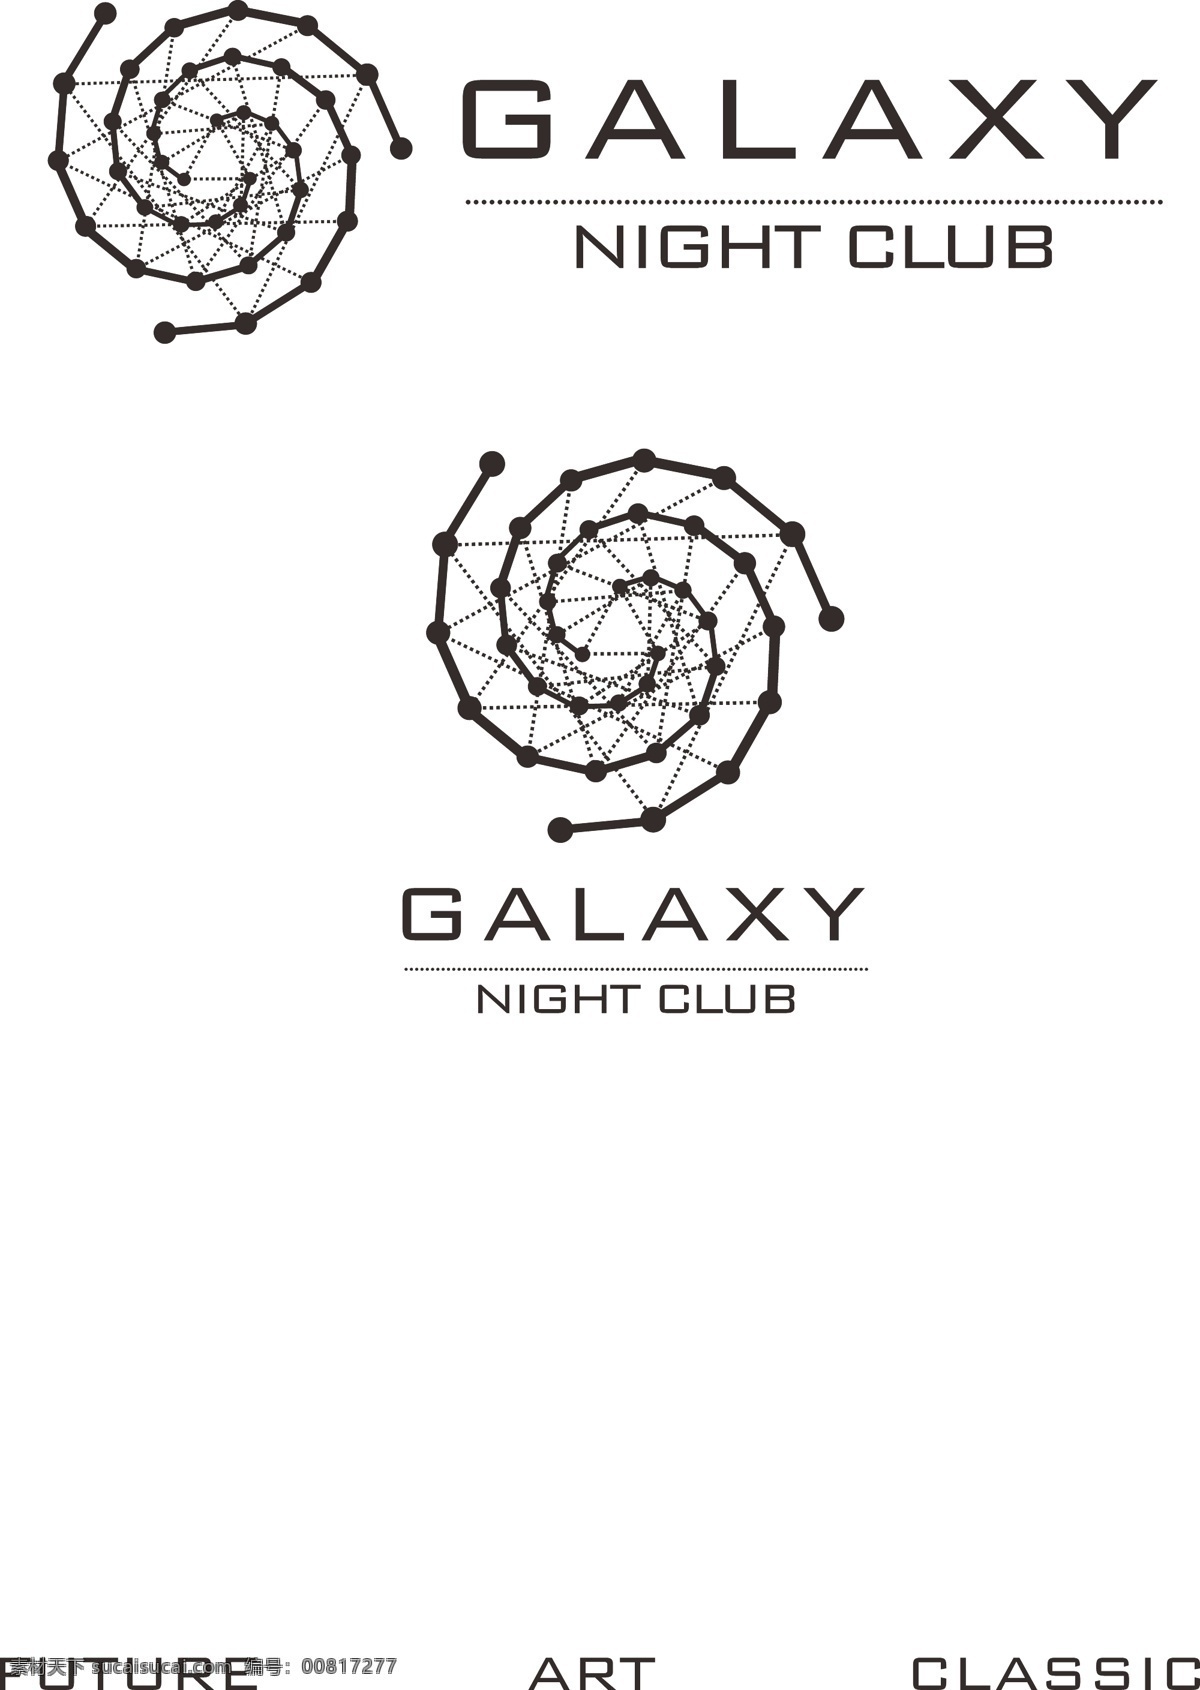 酒吧logo galaxy night club 矢量图 ai格式 cdr格式 ktv cdr标 logo设计